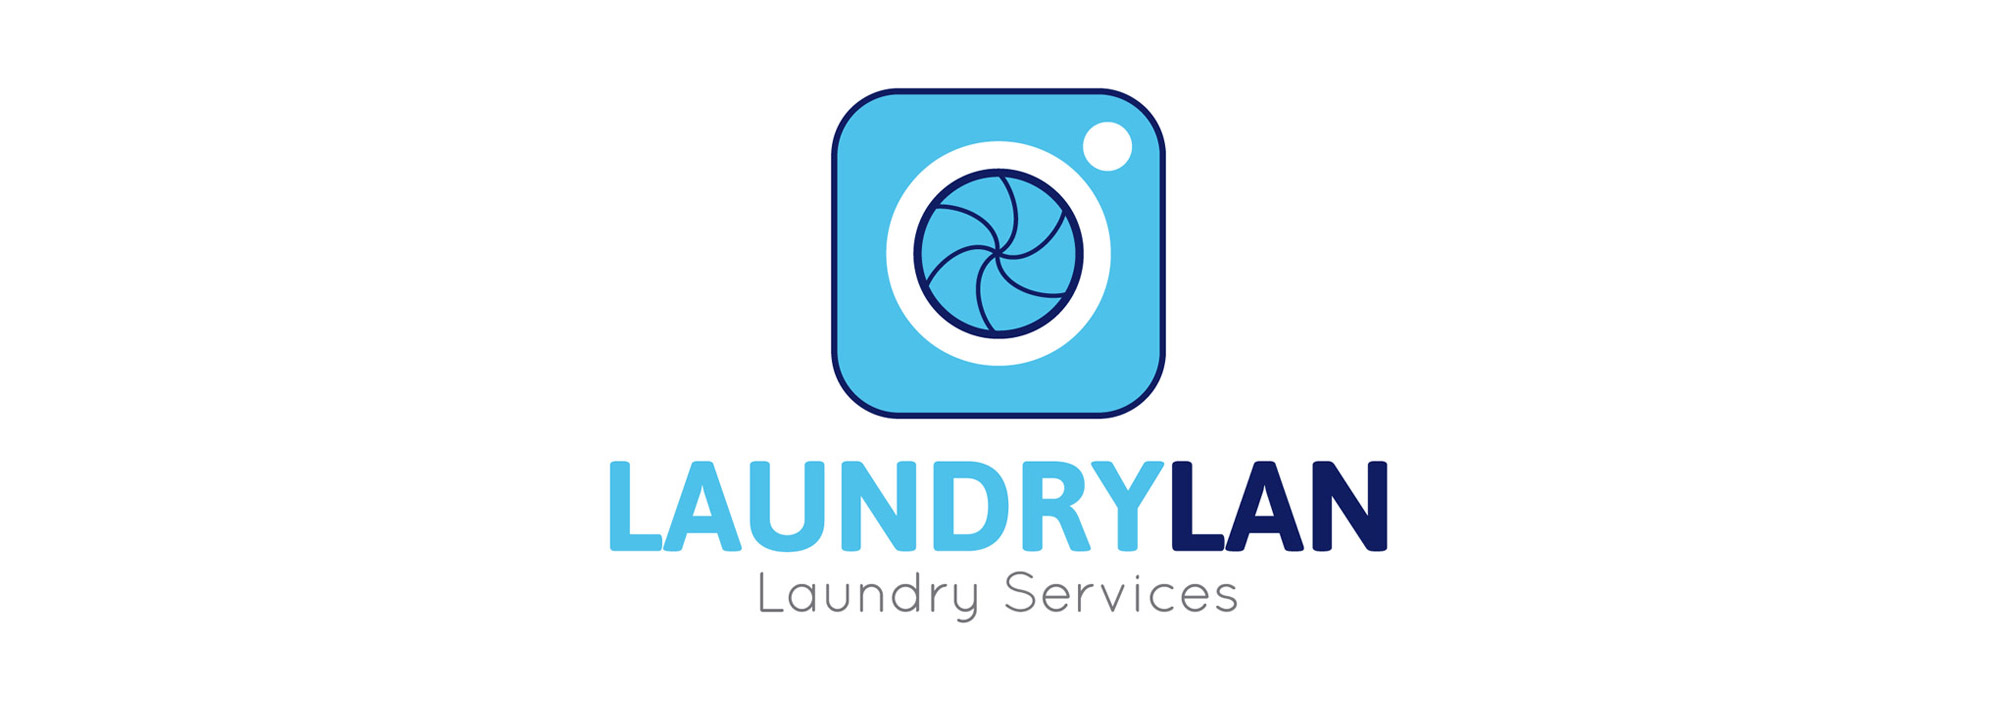 Laundrylan - logotipo